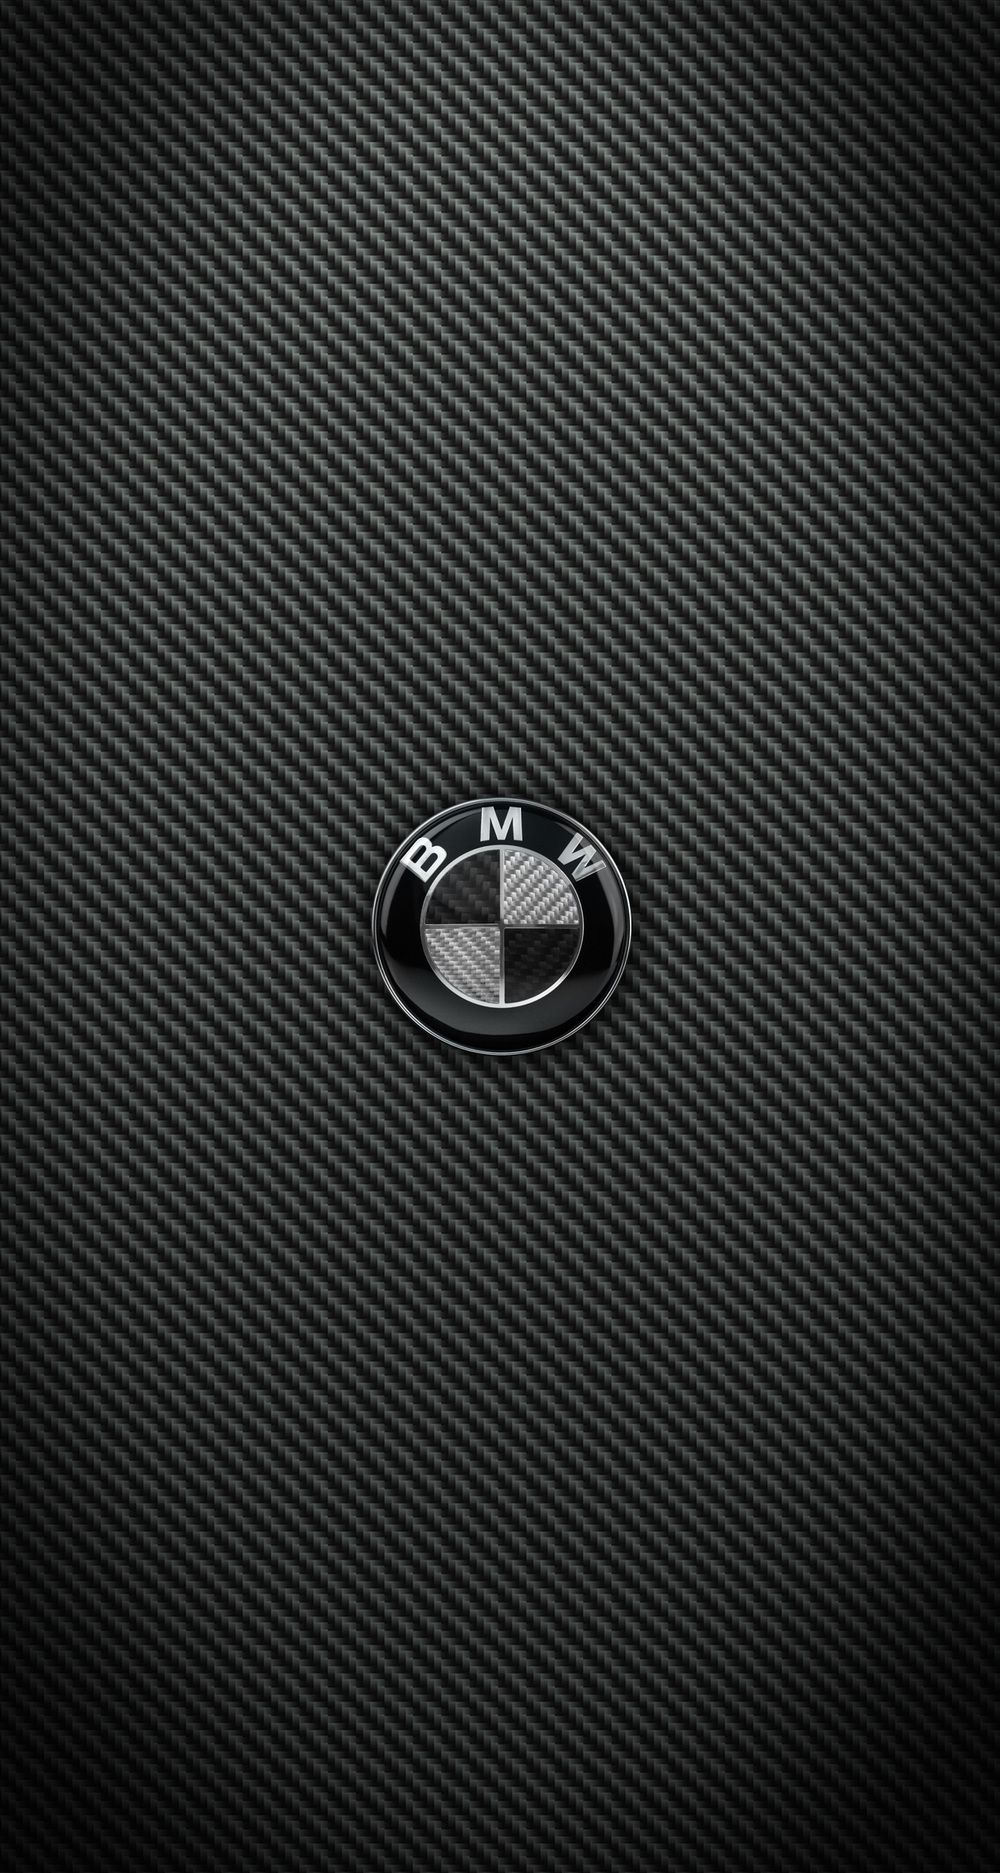 BMW Carbon Fiber Wallpaper Free BMW Carbon Fiber